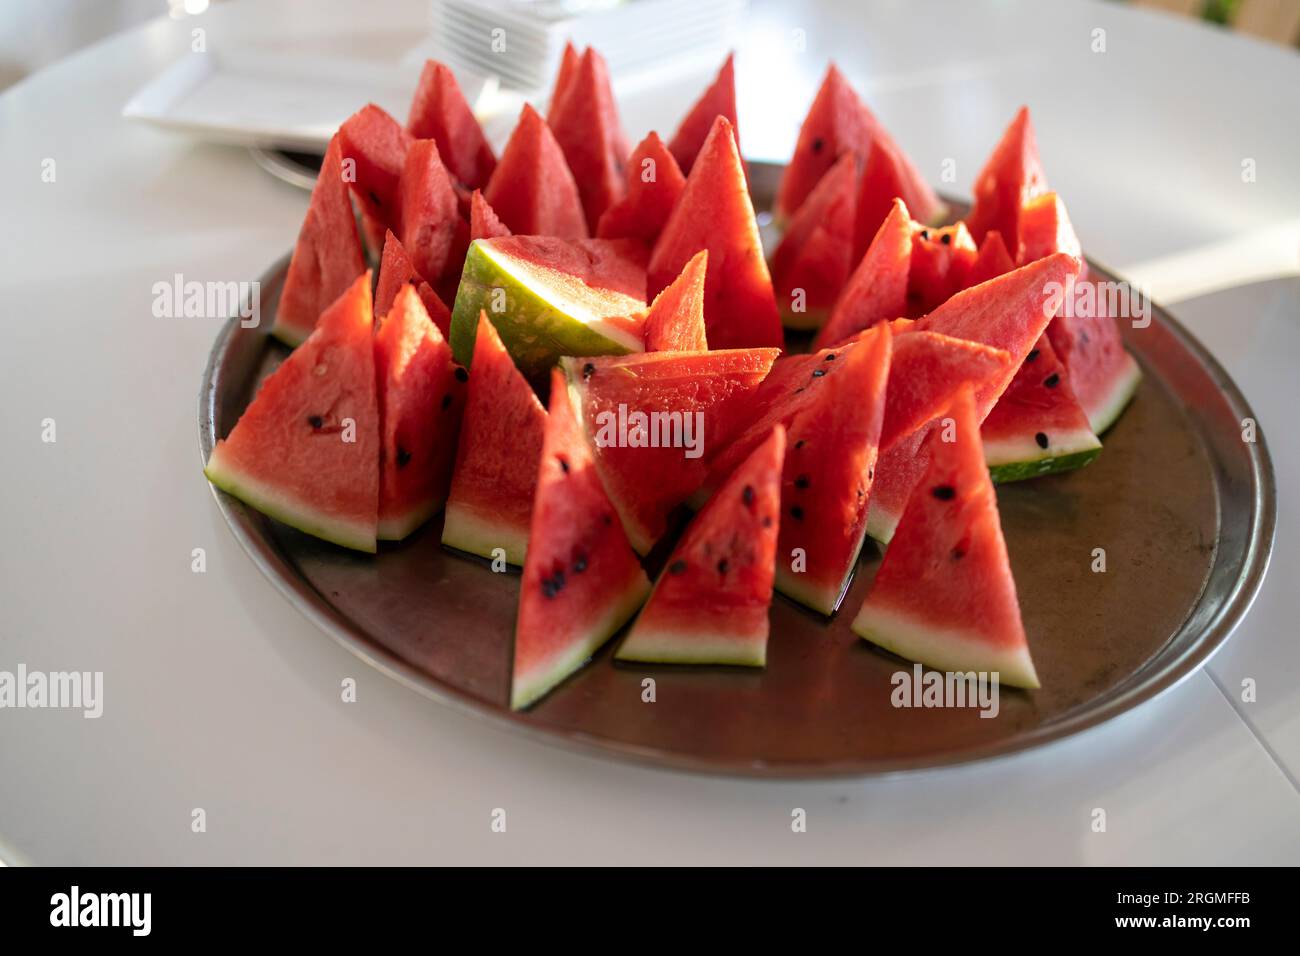 Viele kleine dreieckige Scheiben reifer roter Wassermelone auf einem Teller. Isoliert auf weißem Hintergrund. Blick von oben Stockfoto